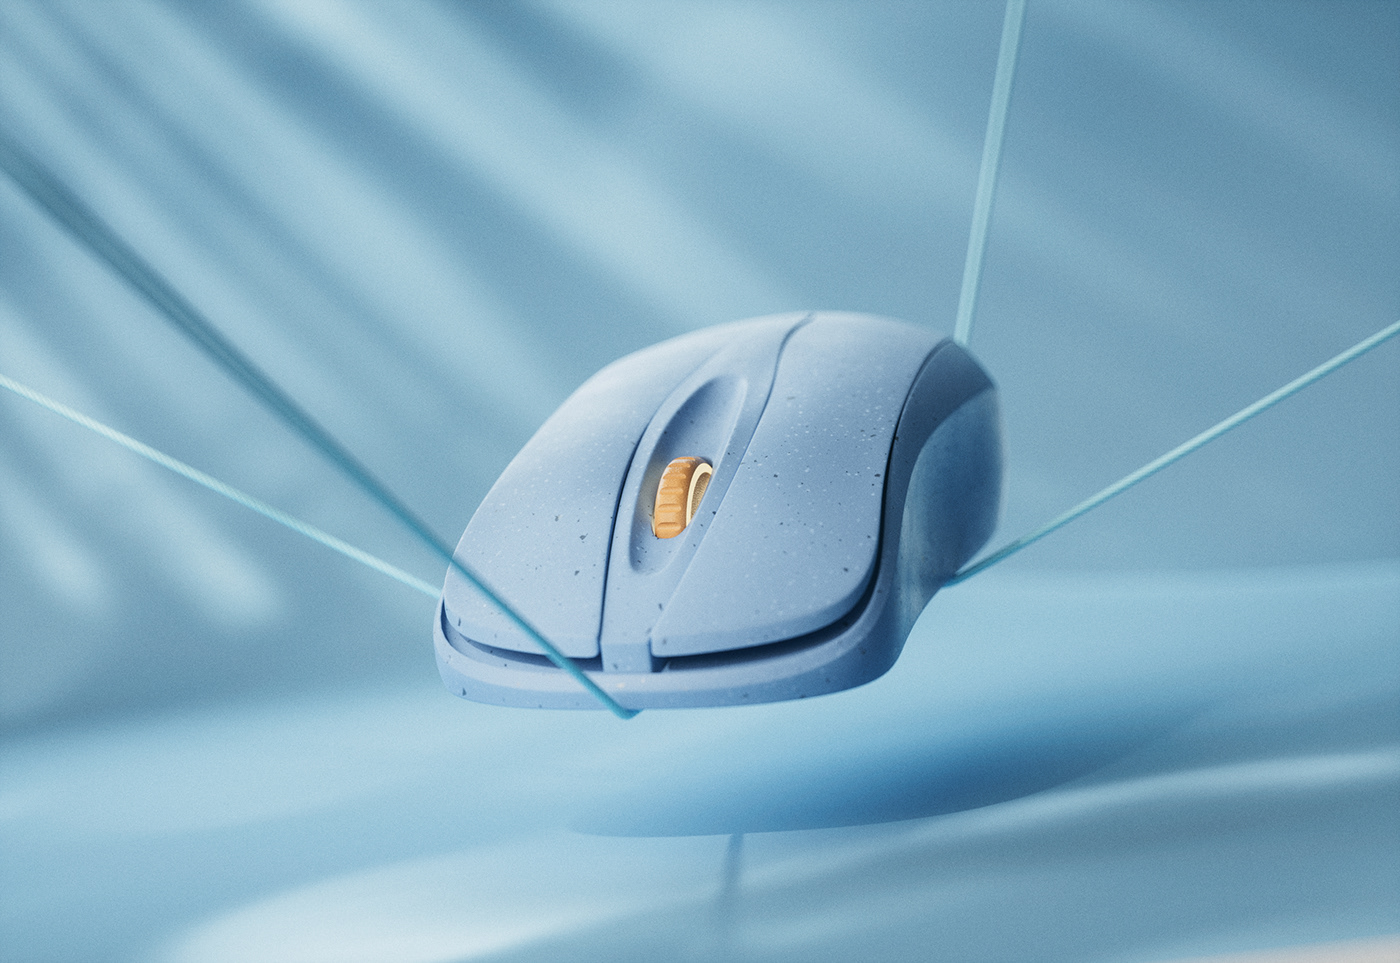 3D c4d octane plastic wireless mouse